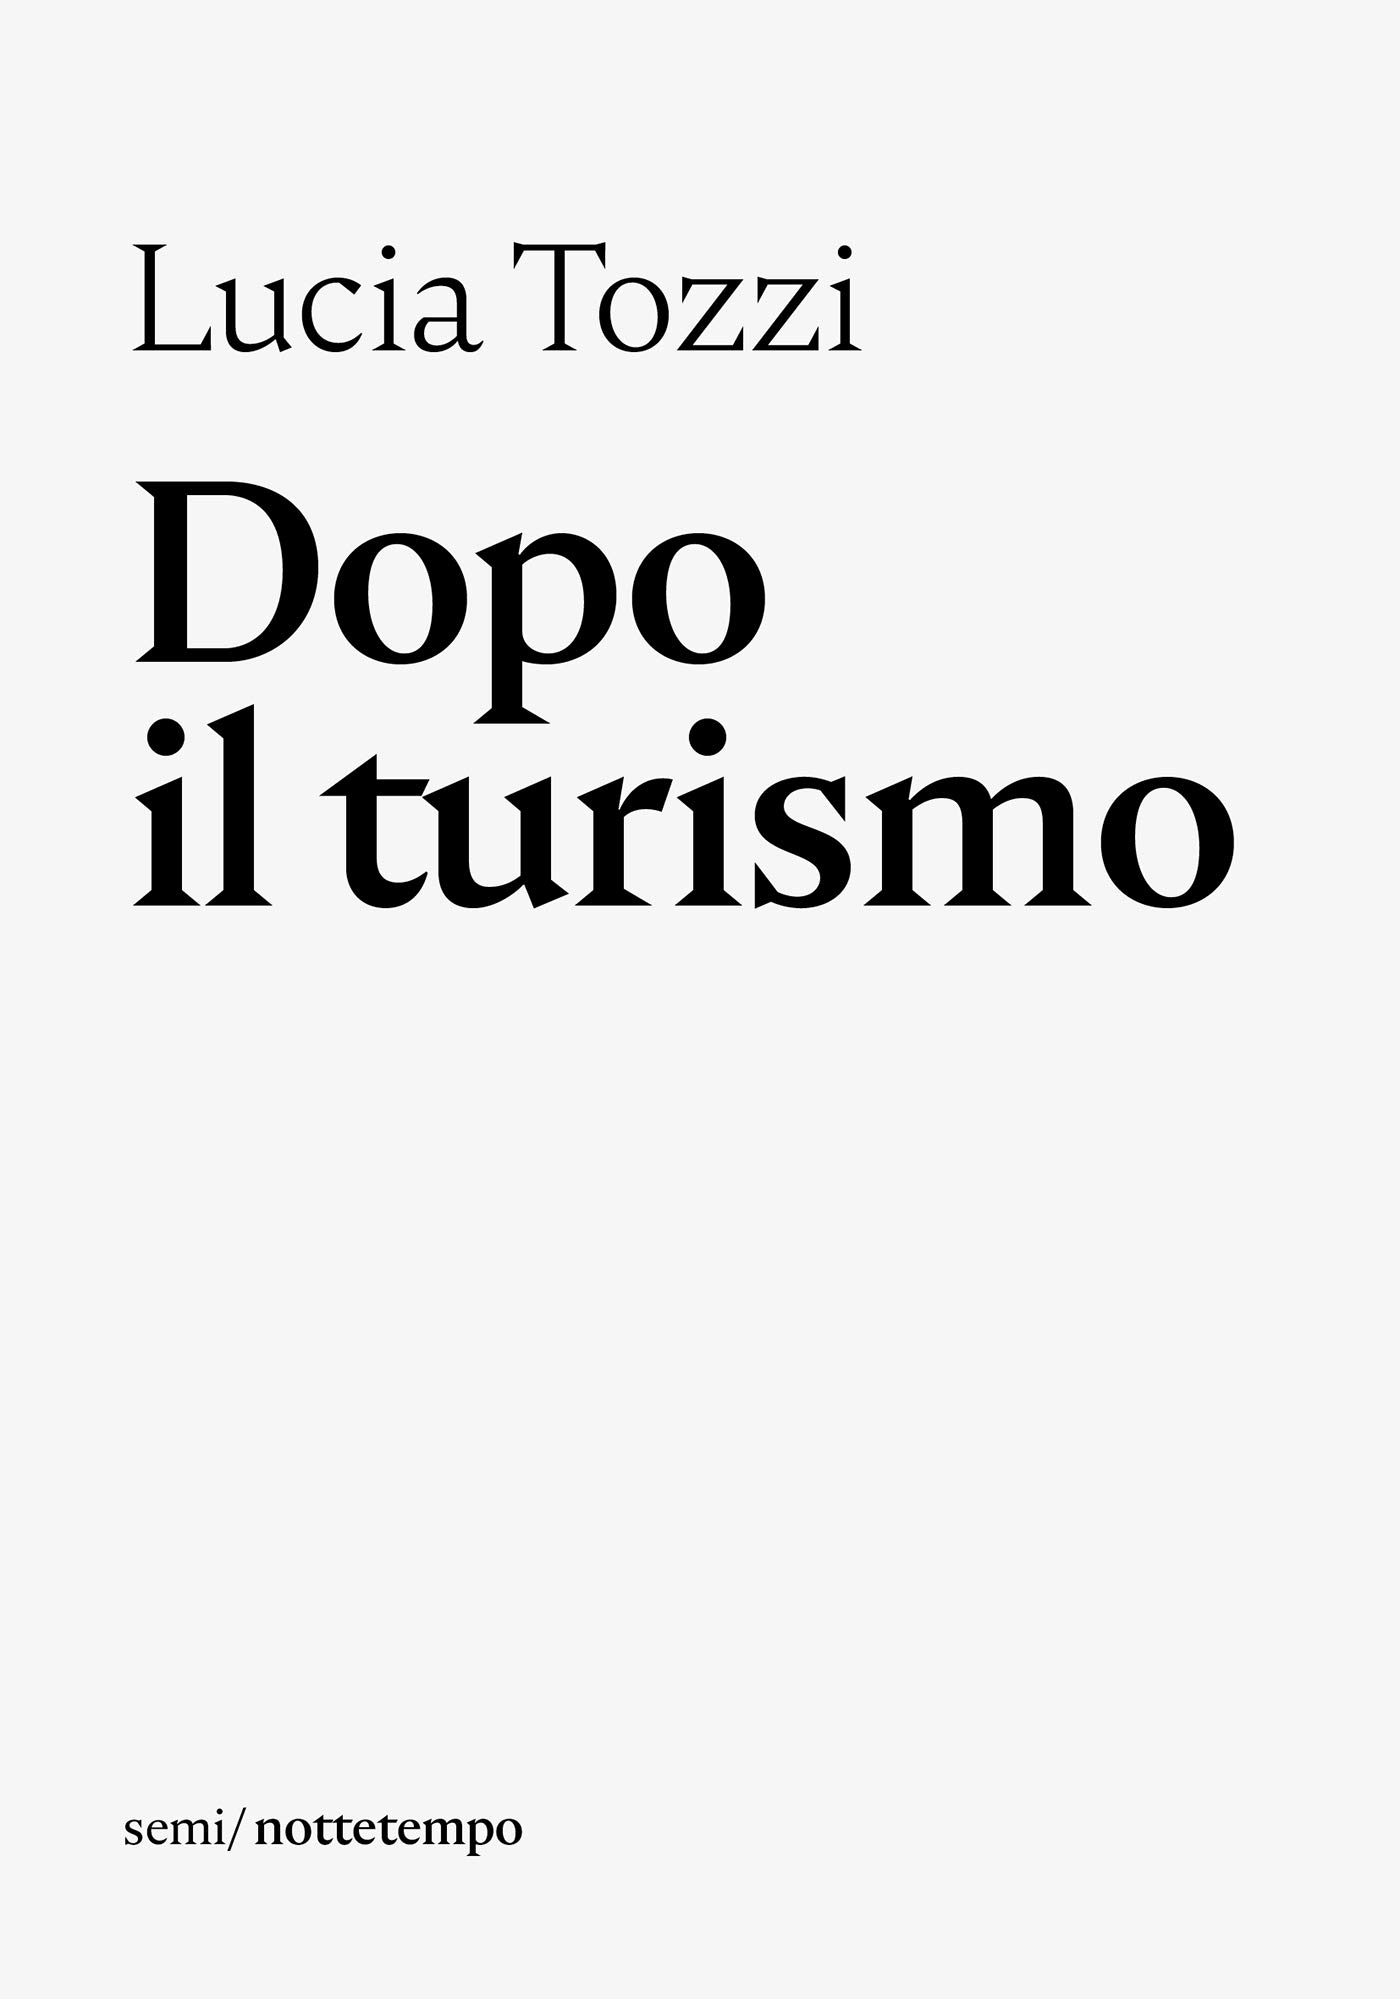 Lucia Tozzi: Dopo il turismo (EBook, it language, nottetempo)